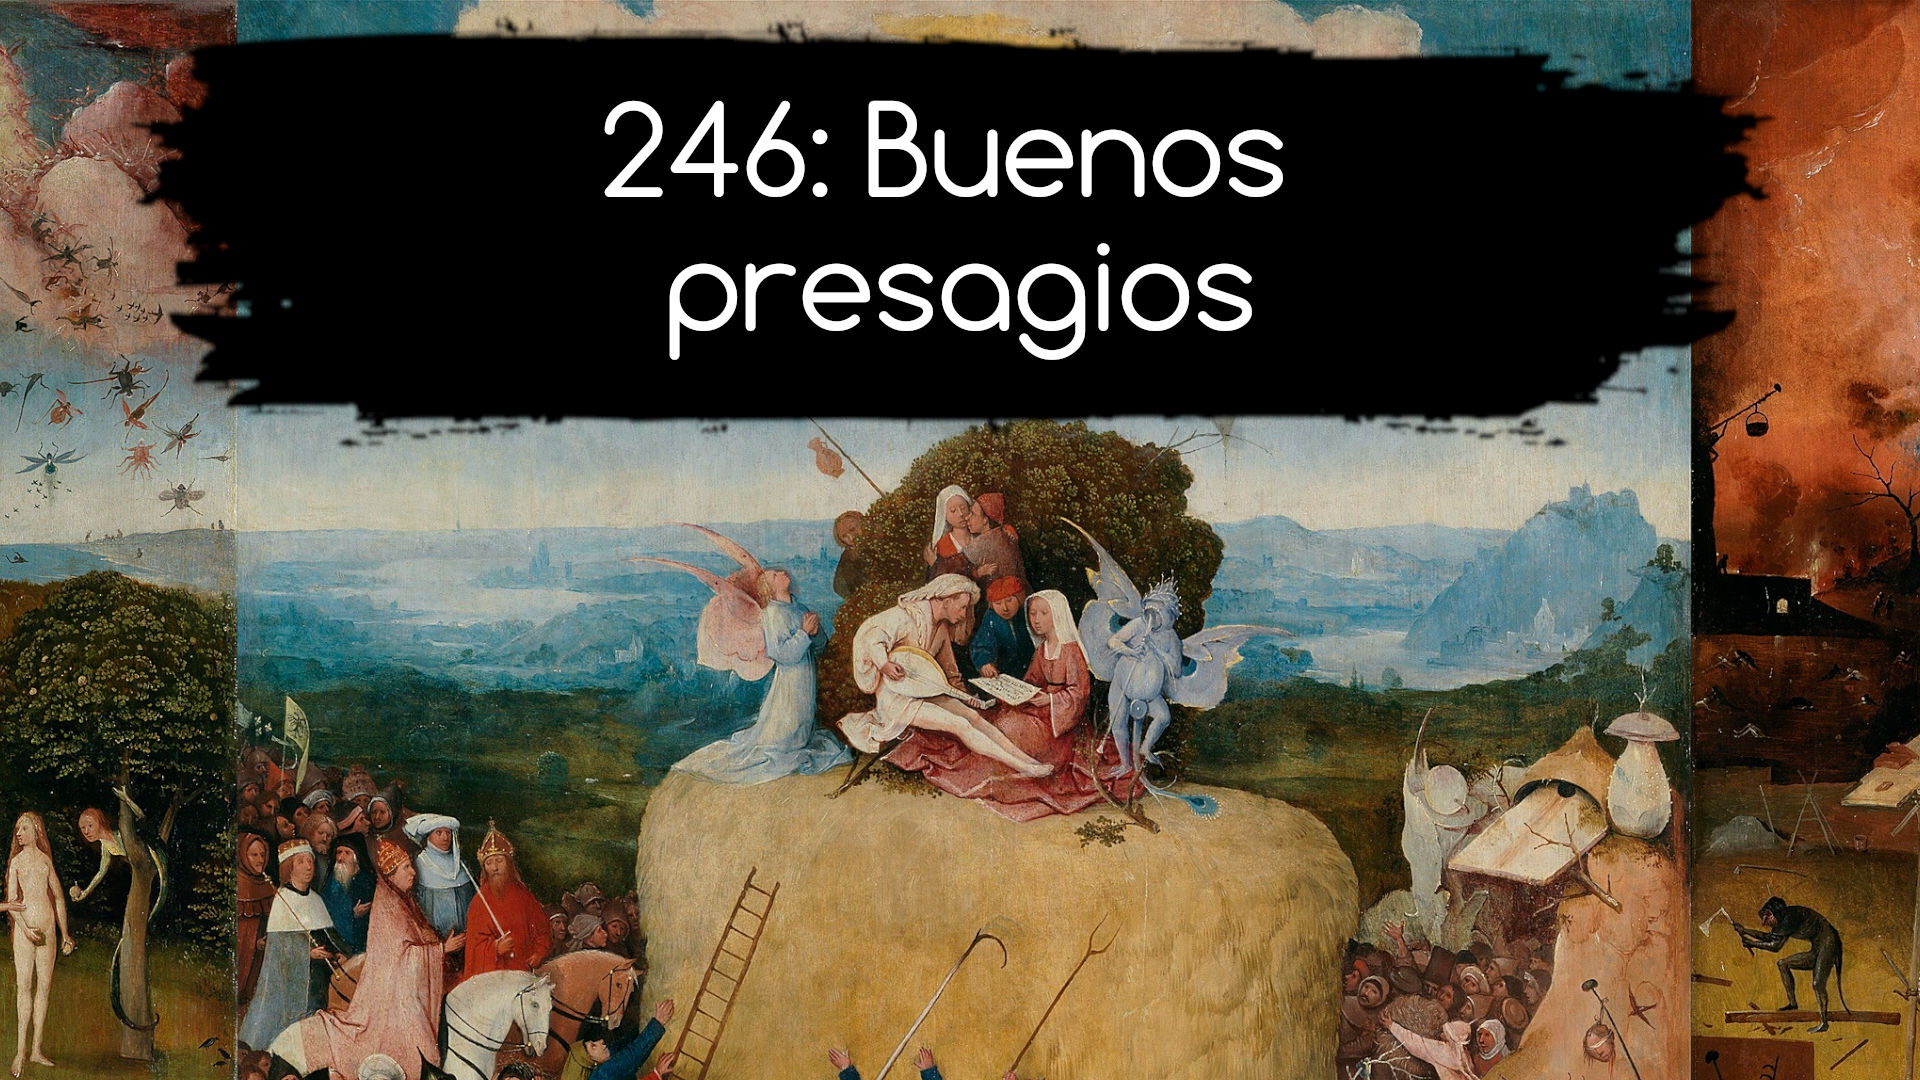 246: Buenos presagios